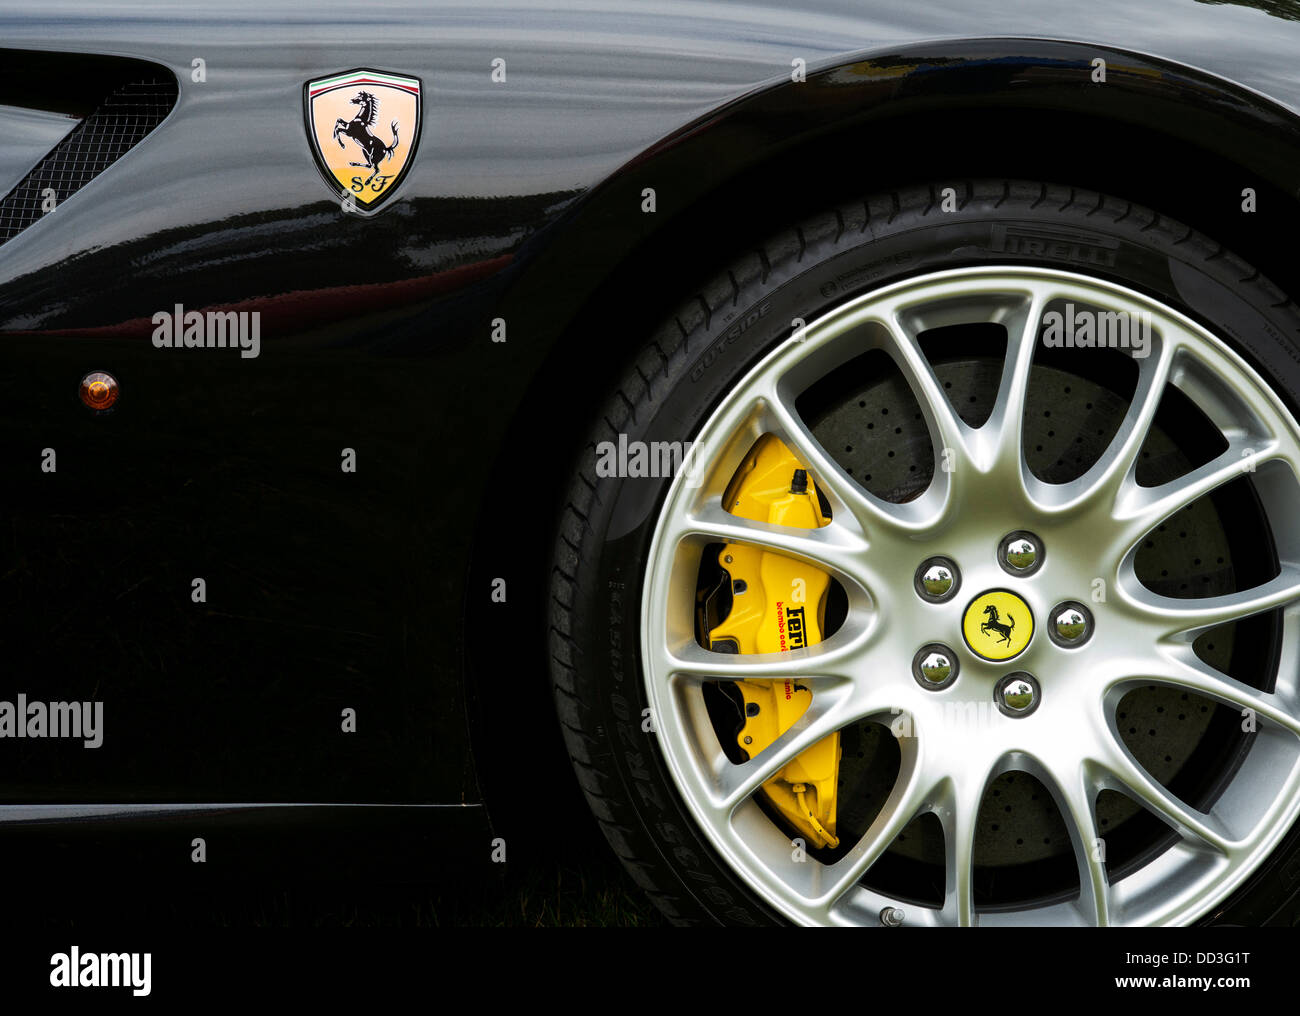 Black Ferrari car side. Ferrari badge horse logo Stock Photo